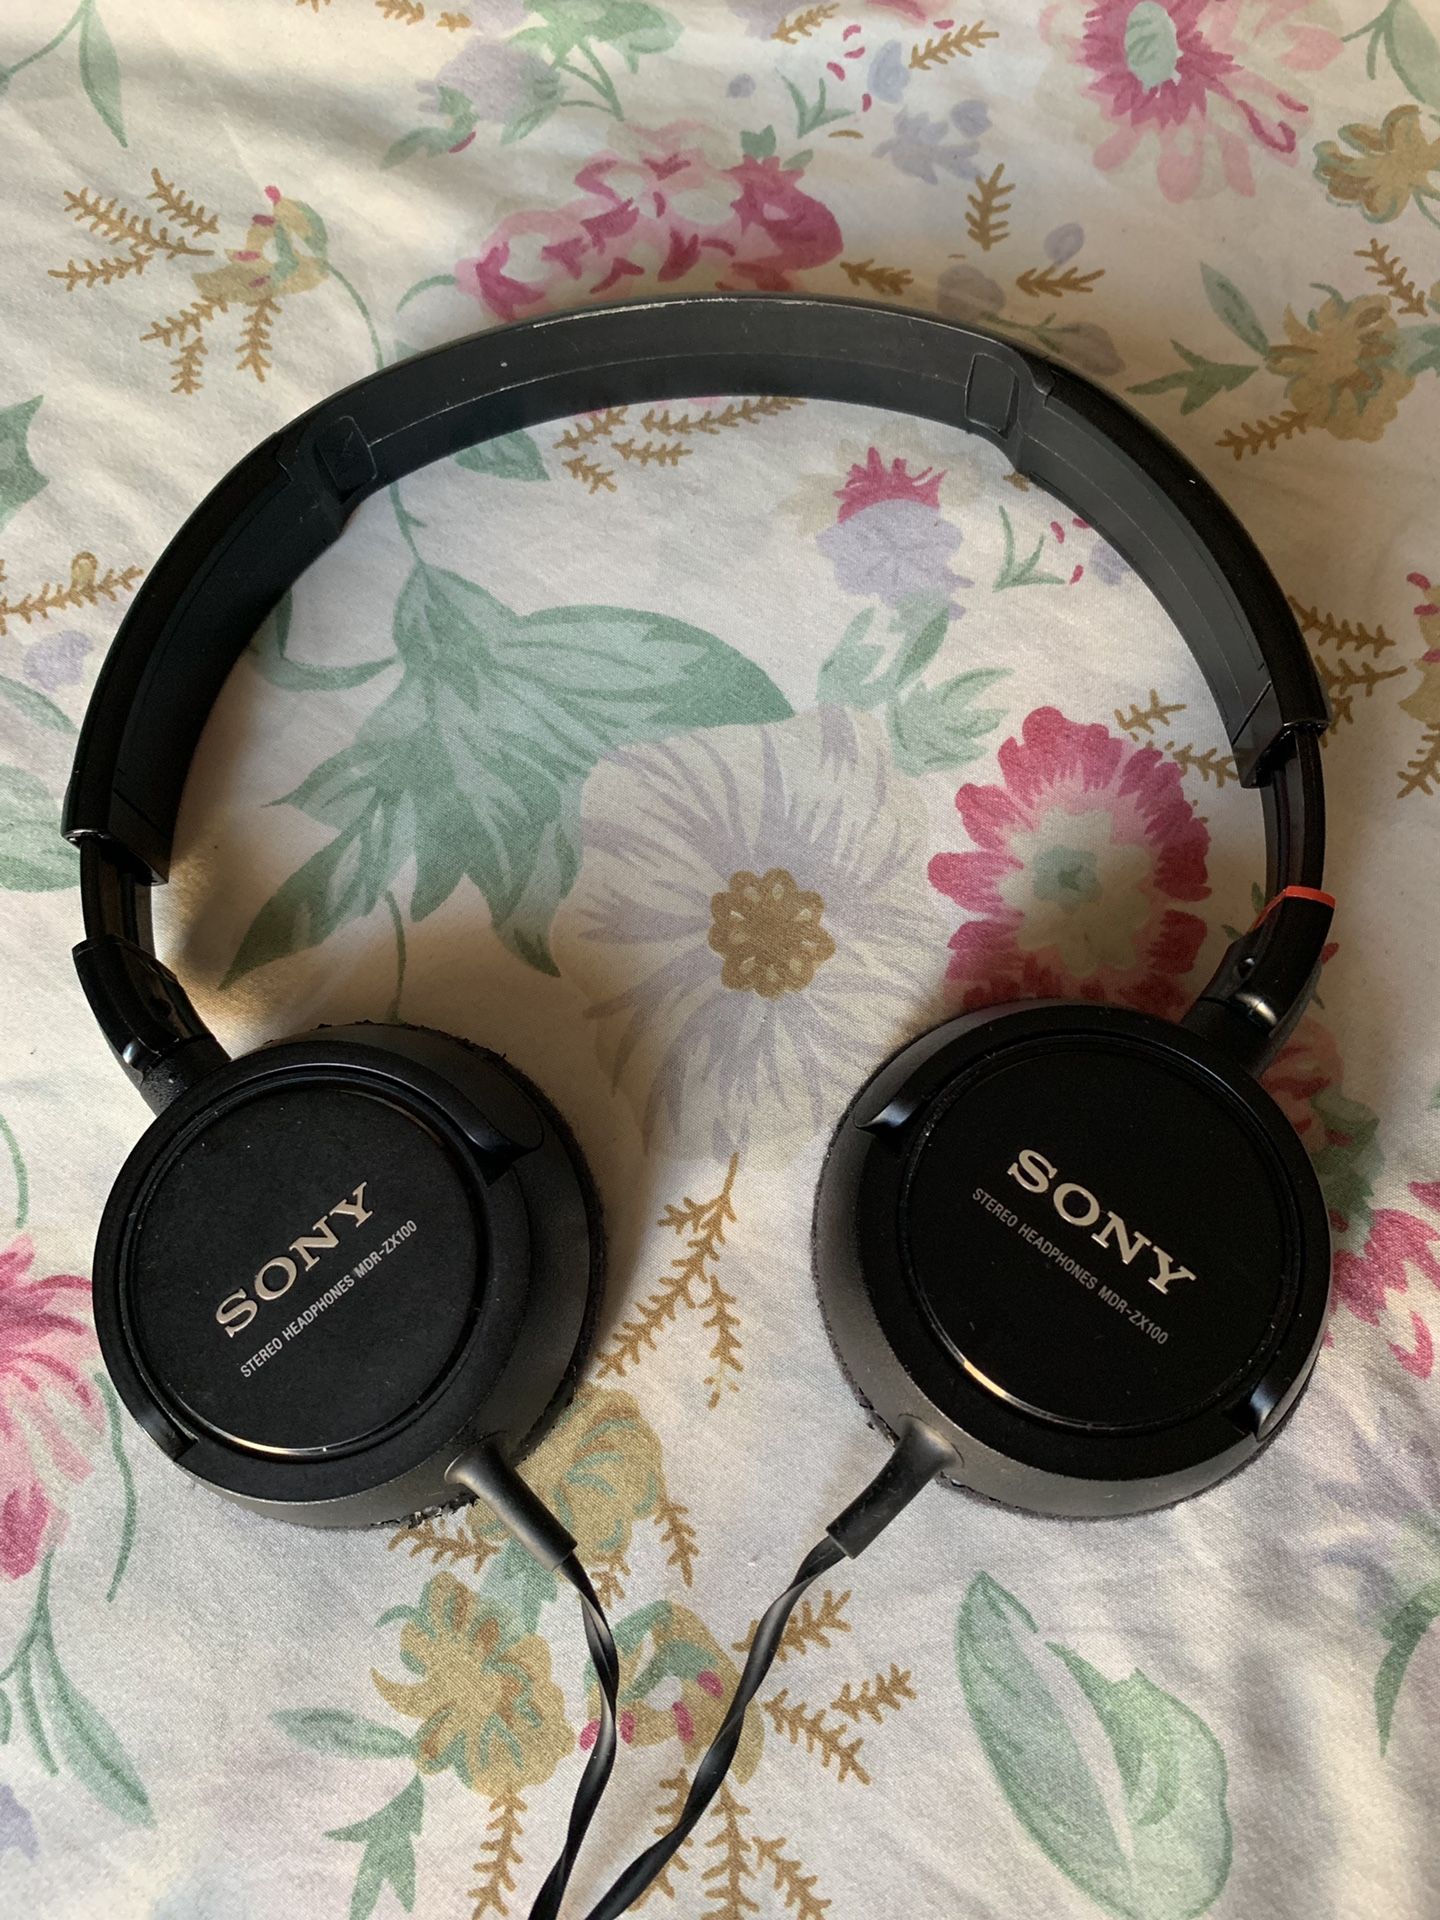 Sony stereo headphones